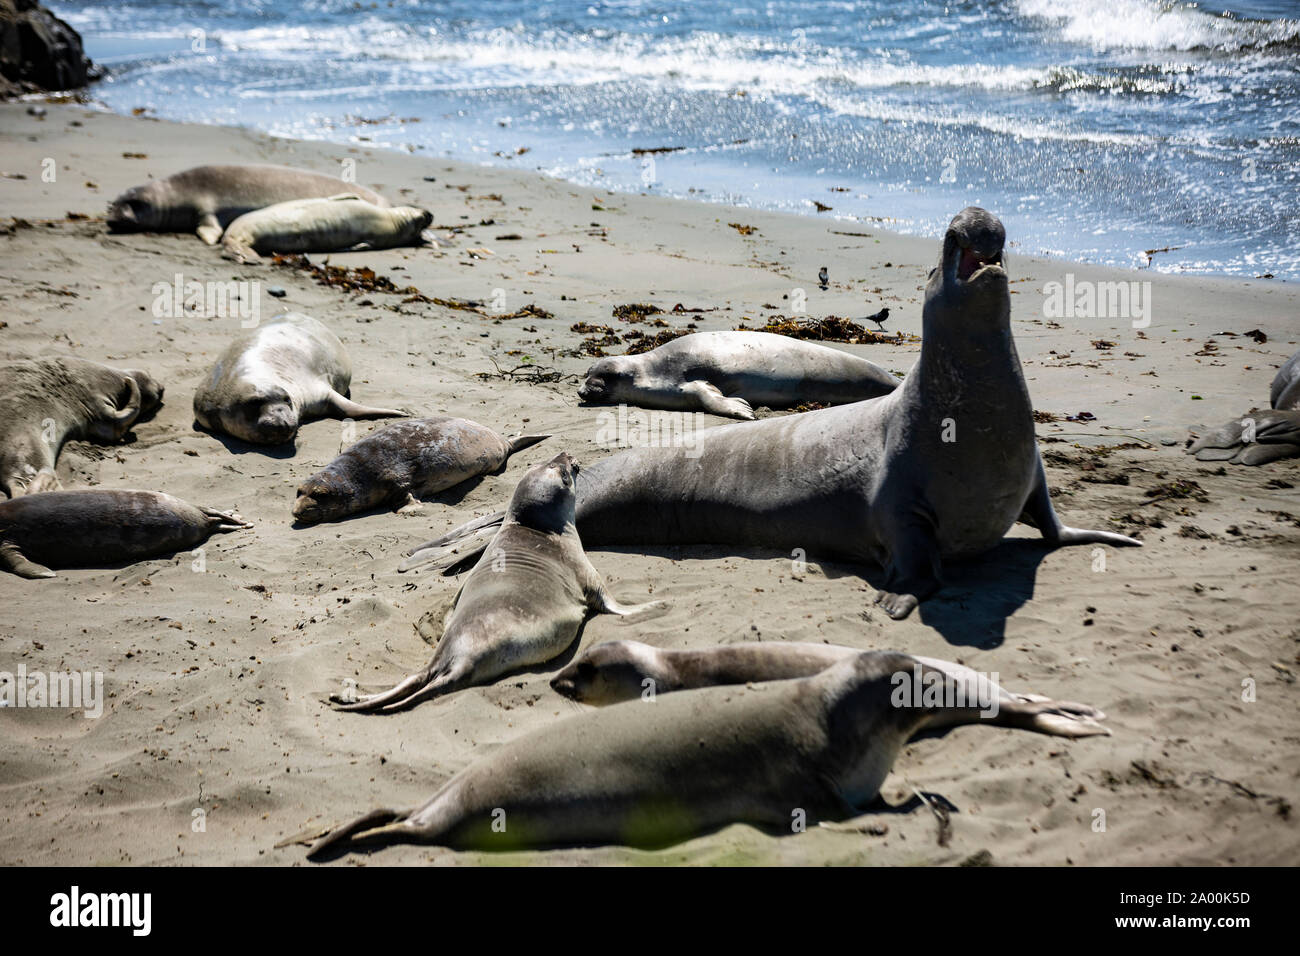 Seelöwen und See-Elefanten liegen am Strand des kalifornischen Küstenabschnitts Big Sur. Die Tiere faulenzen in der Sonne, lassen sich von den Wellen Stock Photo